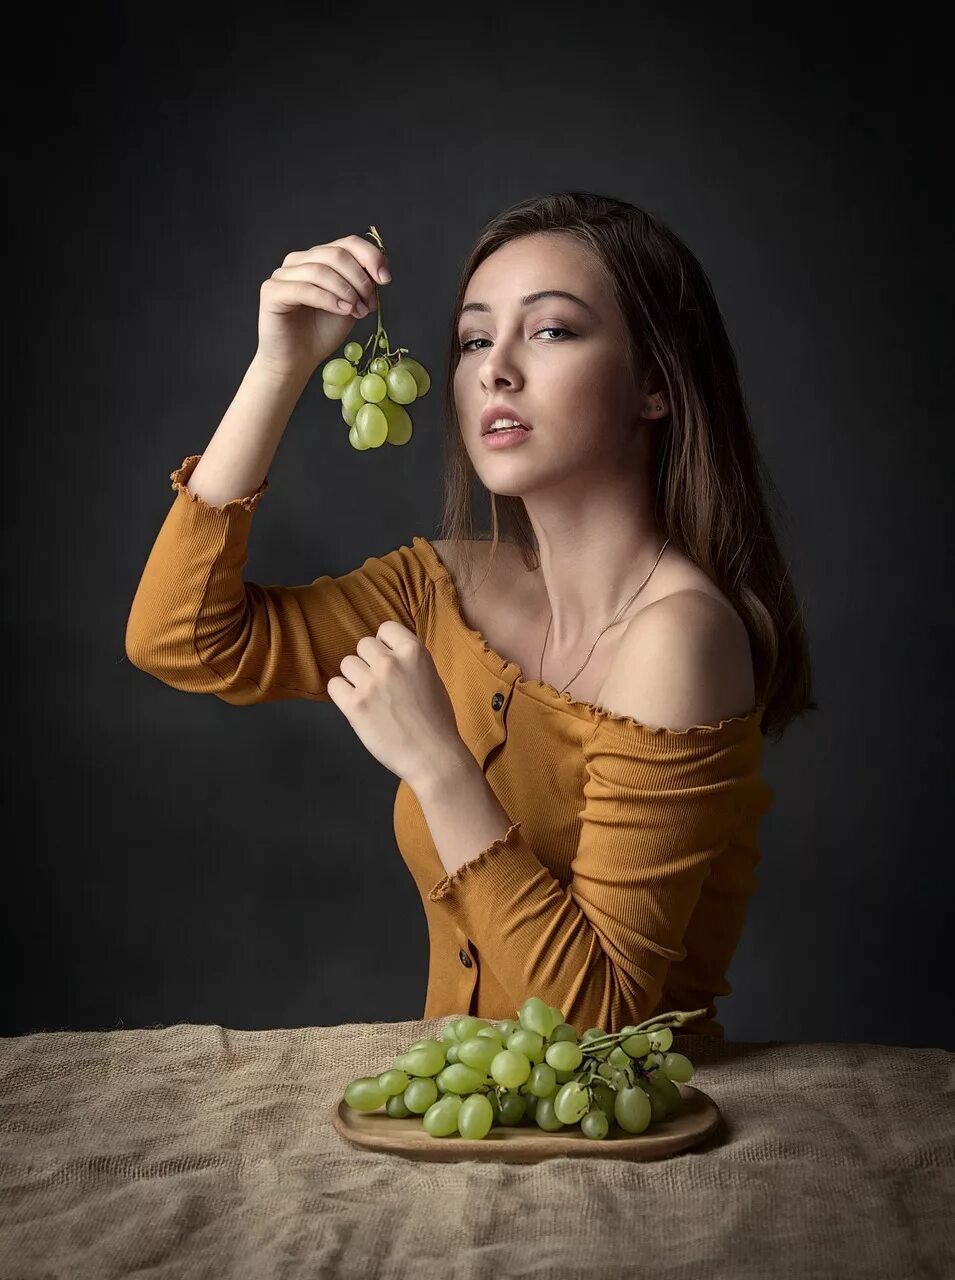 Девушка есть виноград. Девушка с вином. Девушка с виноградом. Фотосессия с виноградом. Красивая девушка с виноградом.